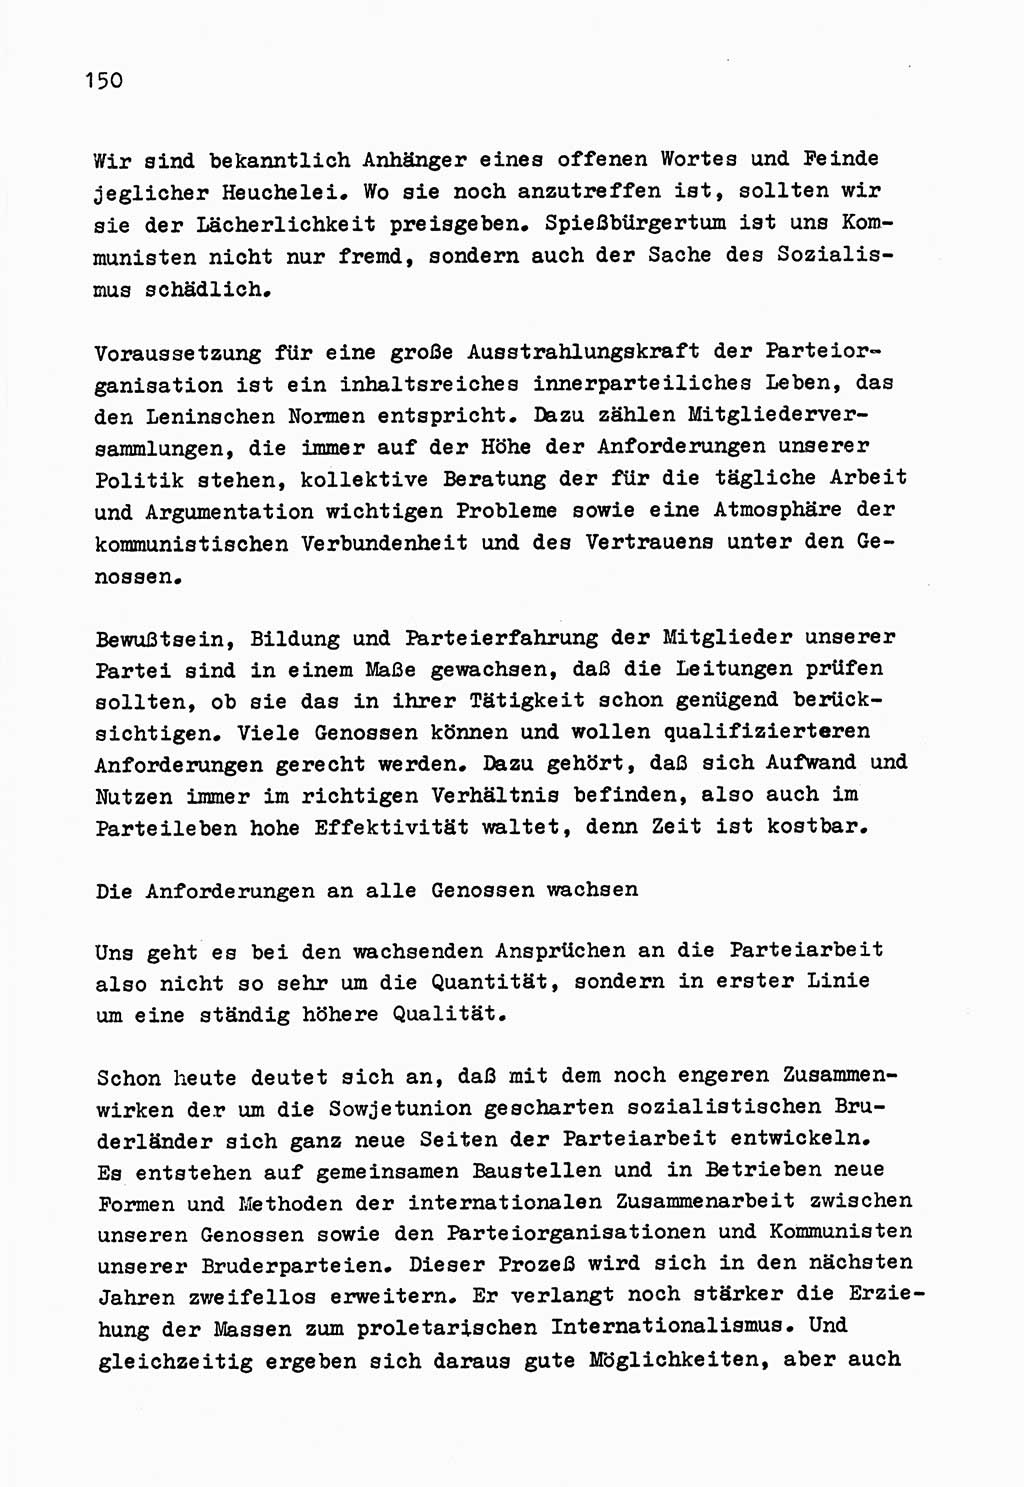 Zu Fragen der Parteiarbeit [Sozialistische Einheitspartei Deutschlands (SED) Deutsche Demokratische Republik (DDR)] 1979, Seite 150 (Fr. PA SED DDR 1979, S. 150)